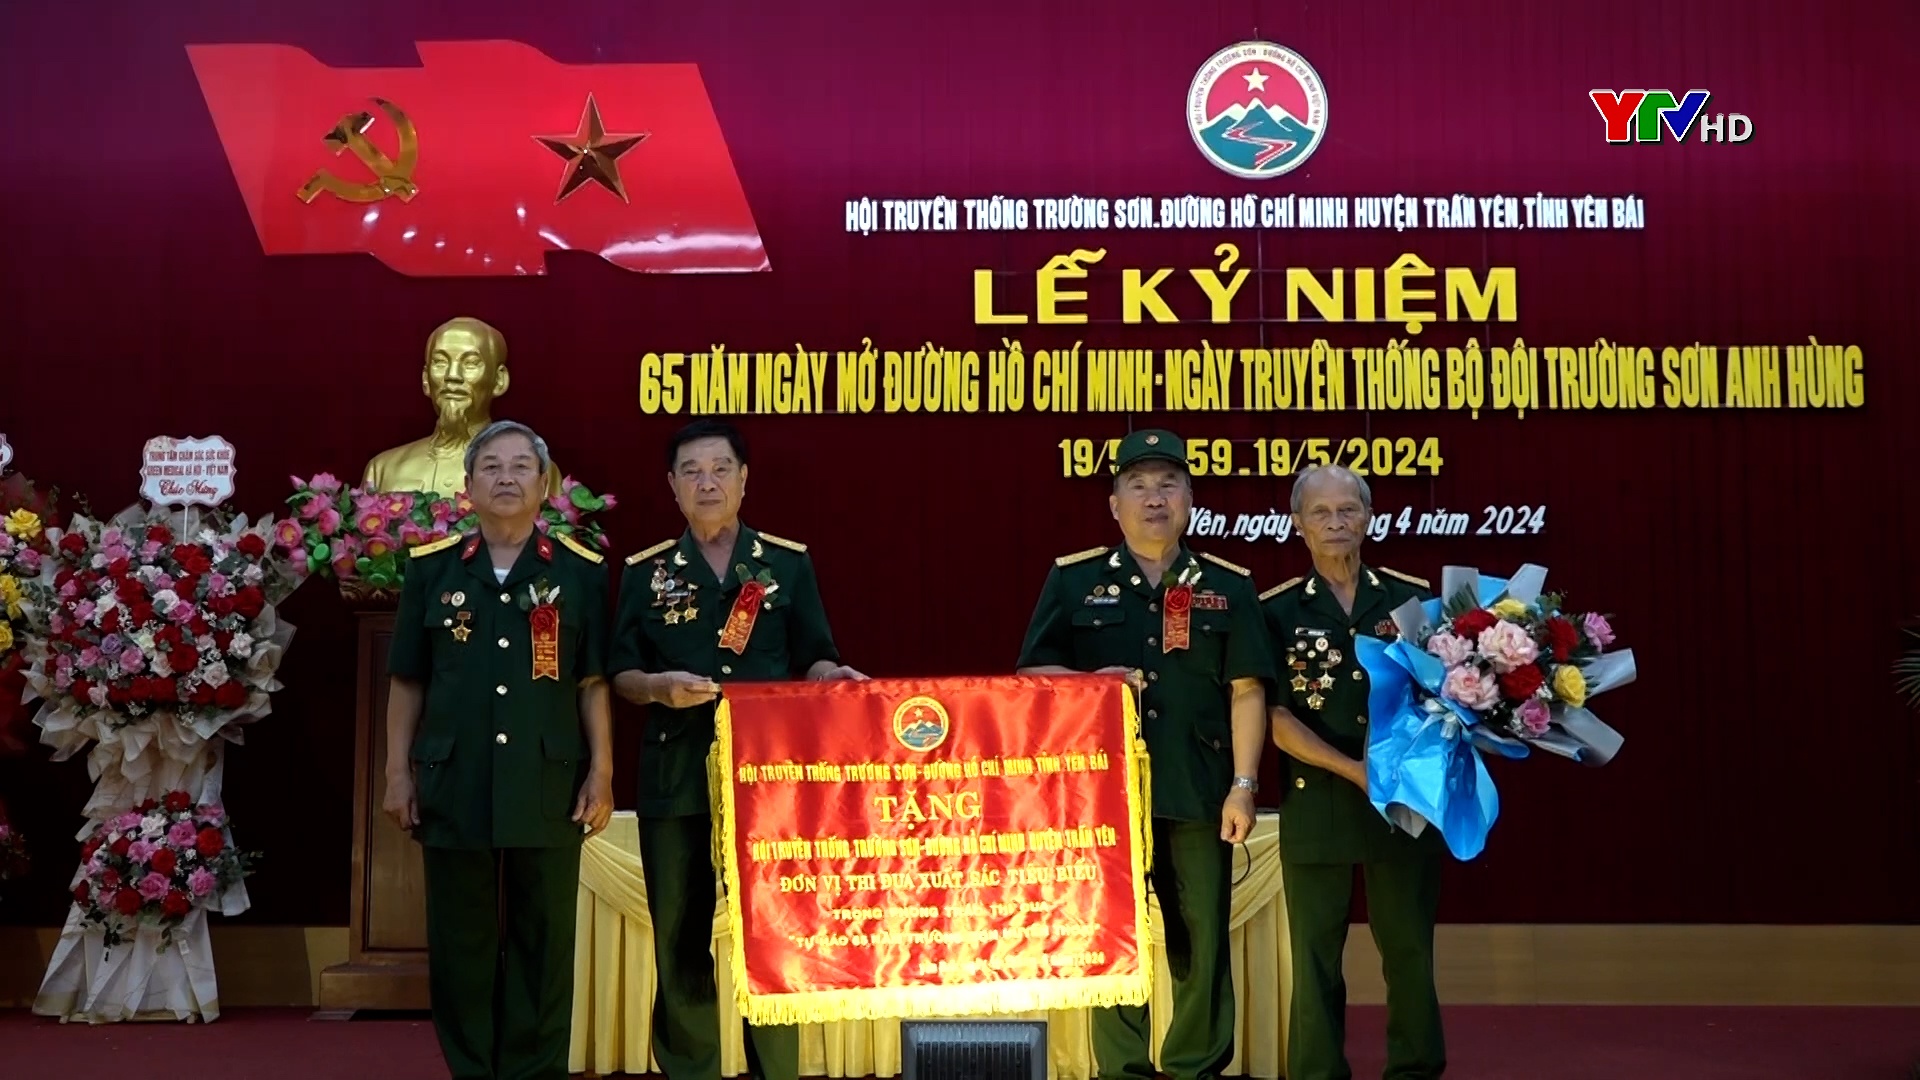 Trấn Yên kỷ niệm 65 năm Ngày mở đường Hồ Chí Minh, Ngày truyền thống Bộ đội Trường Sơn anh hùng